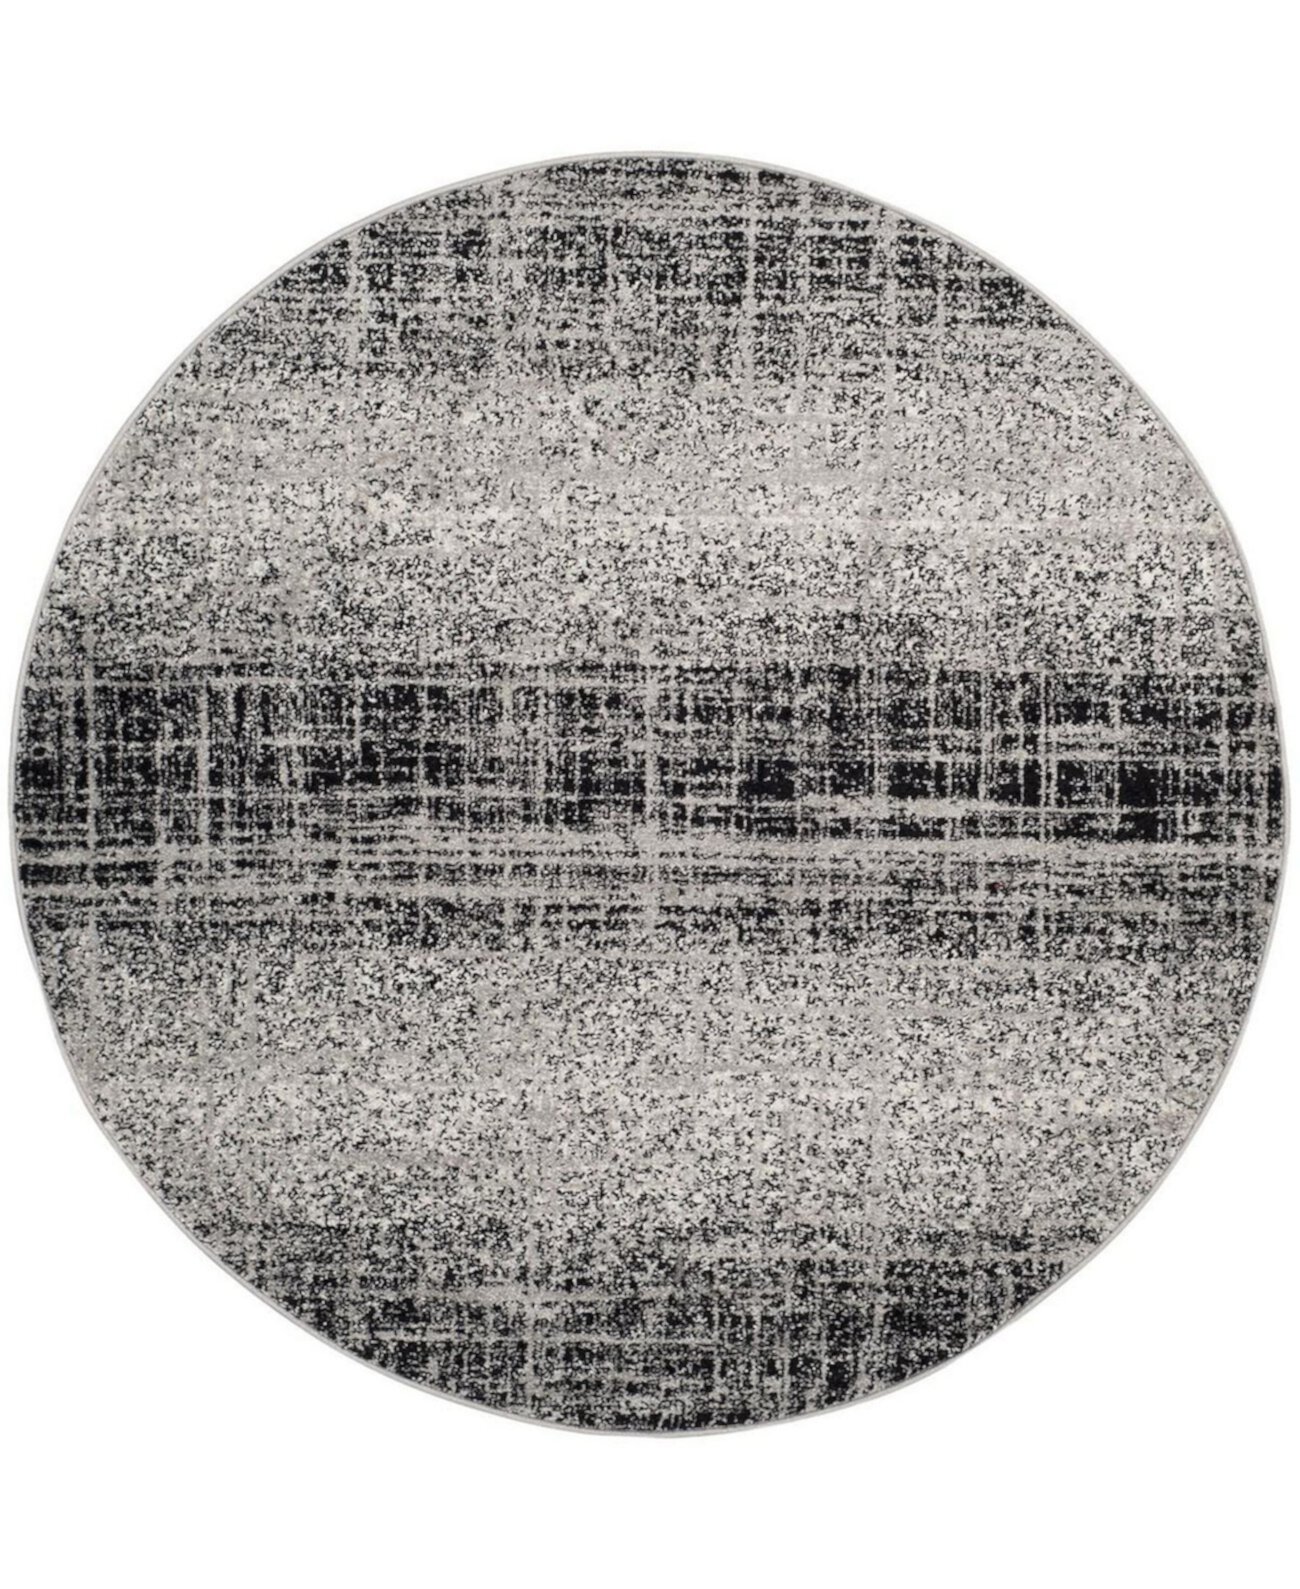 Adirondack 116 Серебристый и черный круглый коврик размером 6 x 6 футов Safavieh